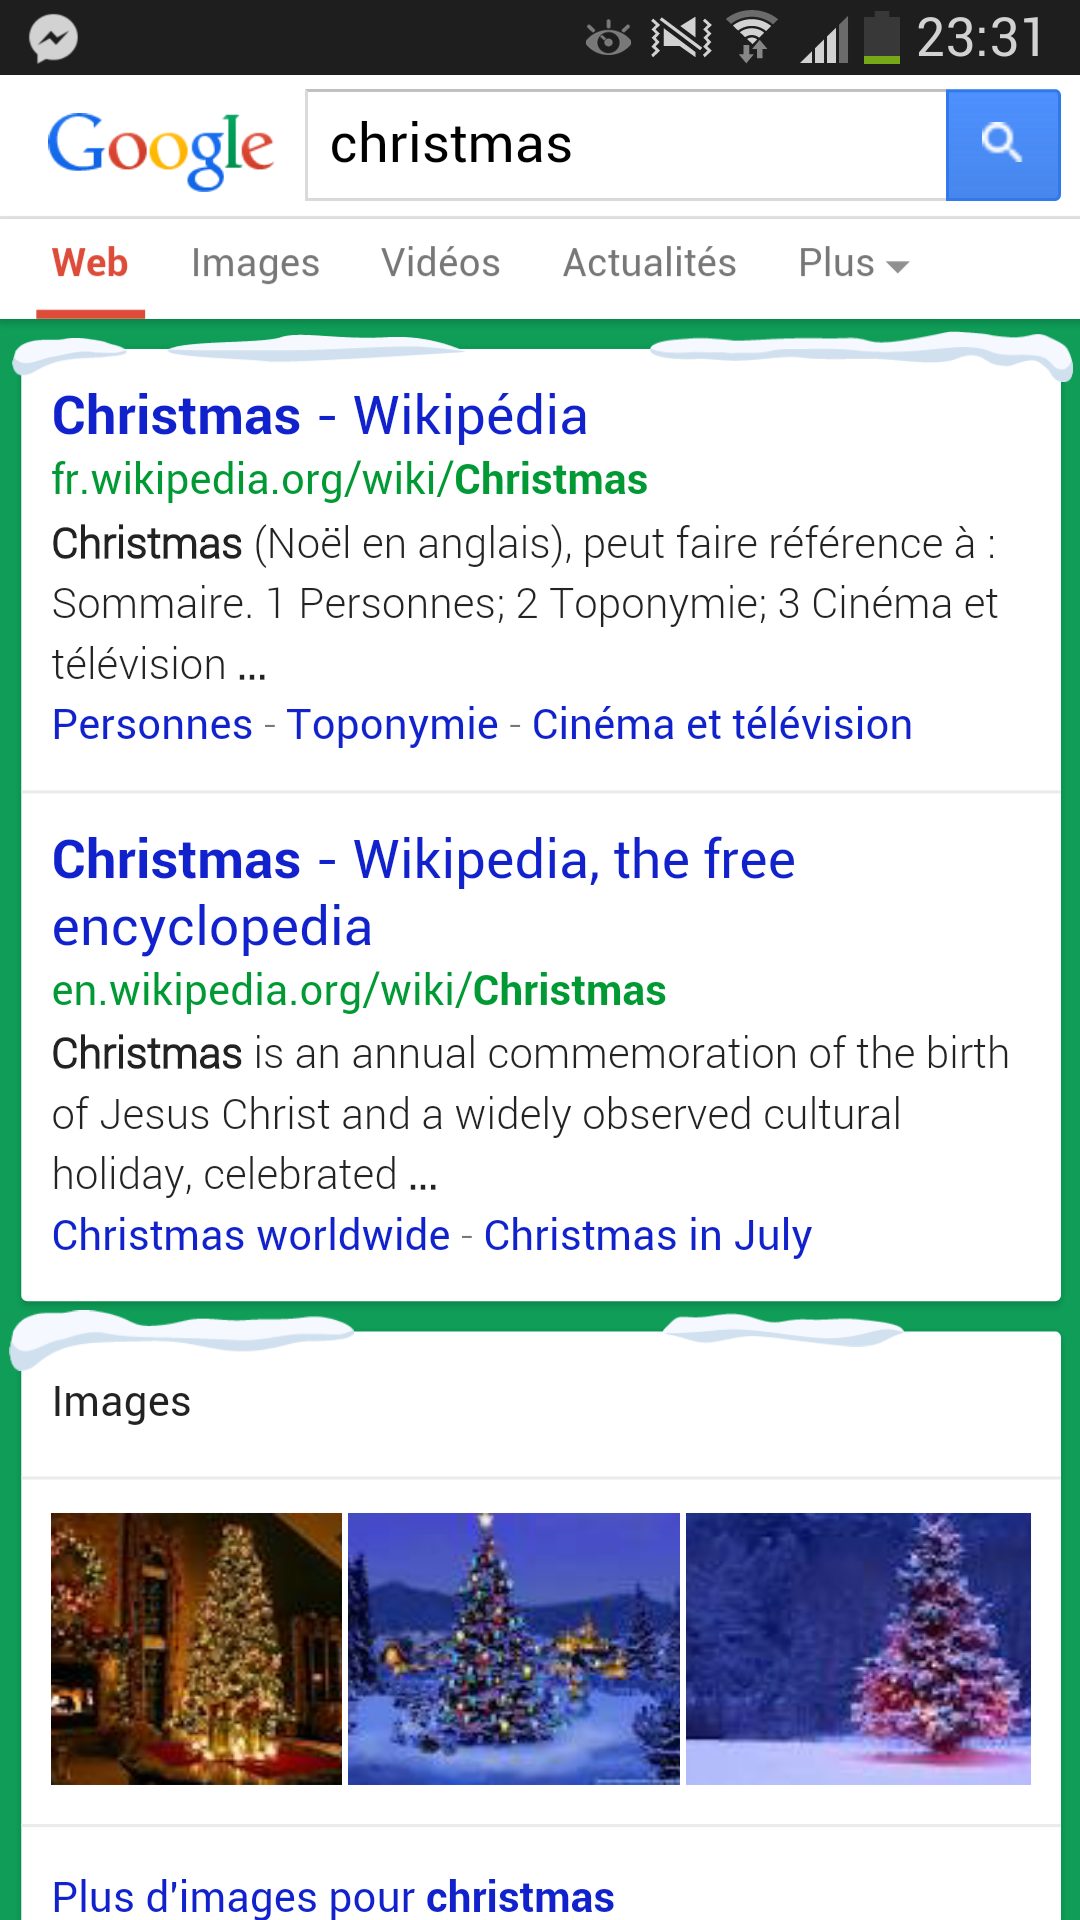 Easter Egg Google : tapez une recherche contenant les mots "Christmas" ou "Kwenzaa" et admirez